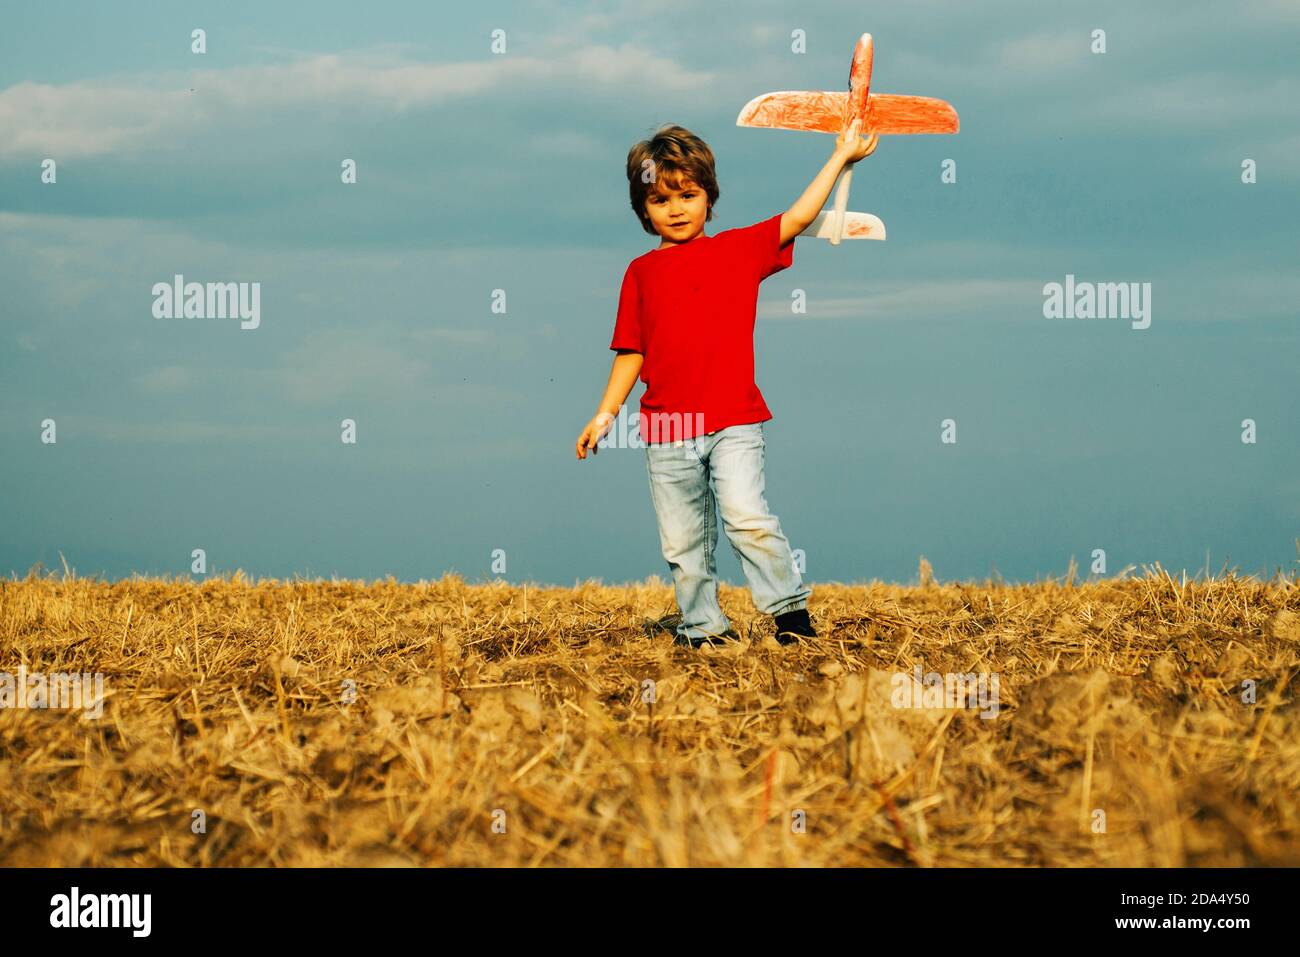 Petit garçon mignon jouant avec un avion jouet. Le concept de la bonté de l'enfant et de l'enfance. Les enfants courent avec le plan sur le champ. Enfant jouant avec le modèle Banque D'Images